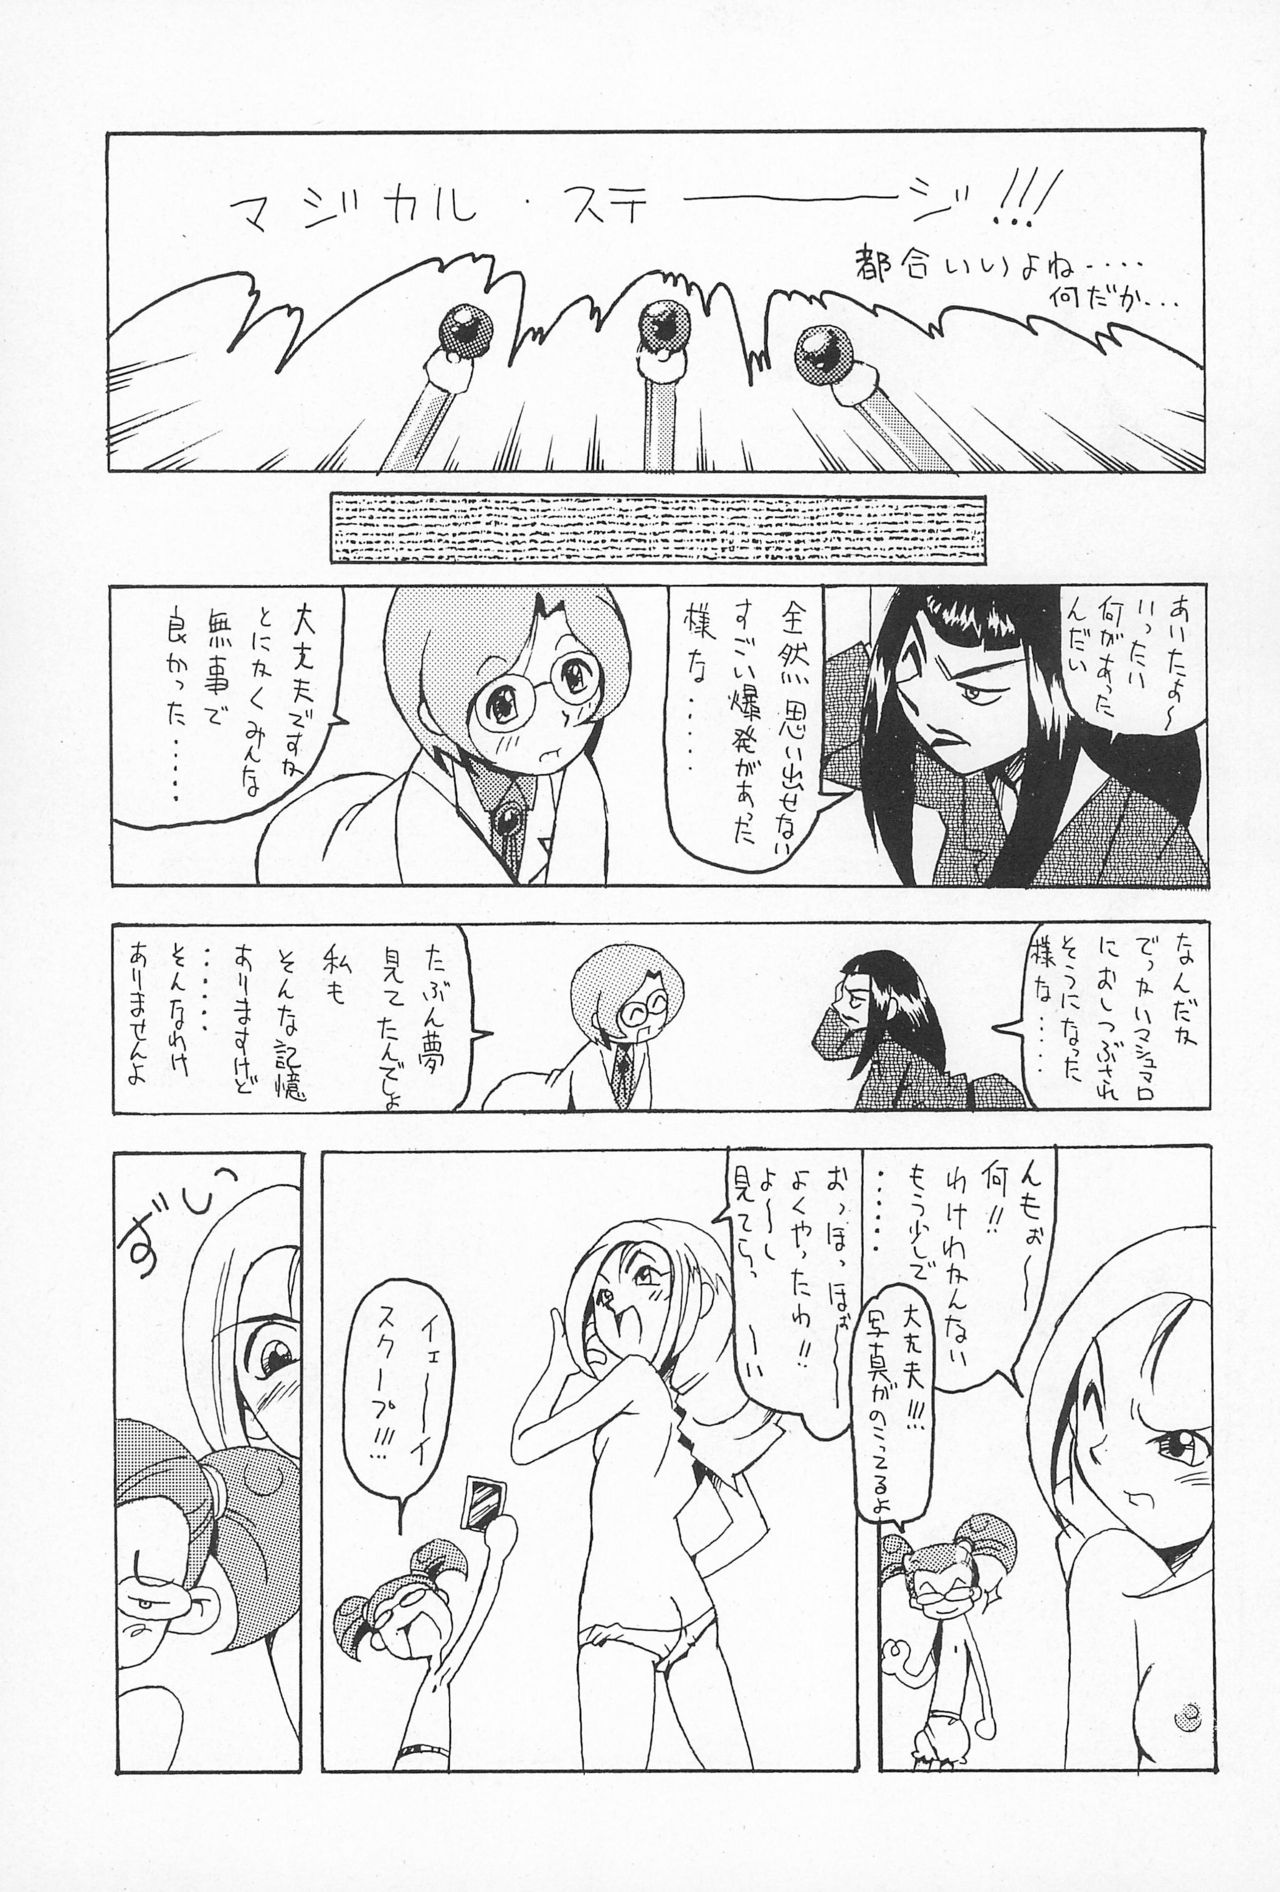 (CR25) [Nekketsu Kouenji Housoukyoku, KENIX (Katori Youichi, Ninnin!)] Doremi Fa So La Si Do (Ojamajo Doremi) page 17 full